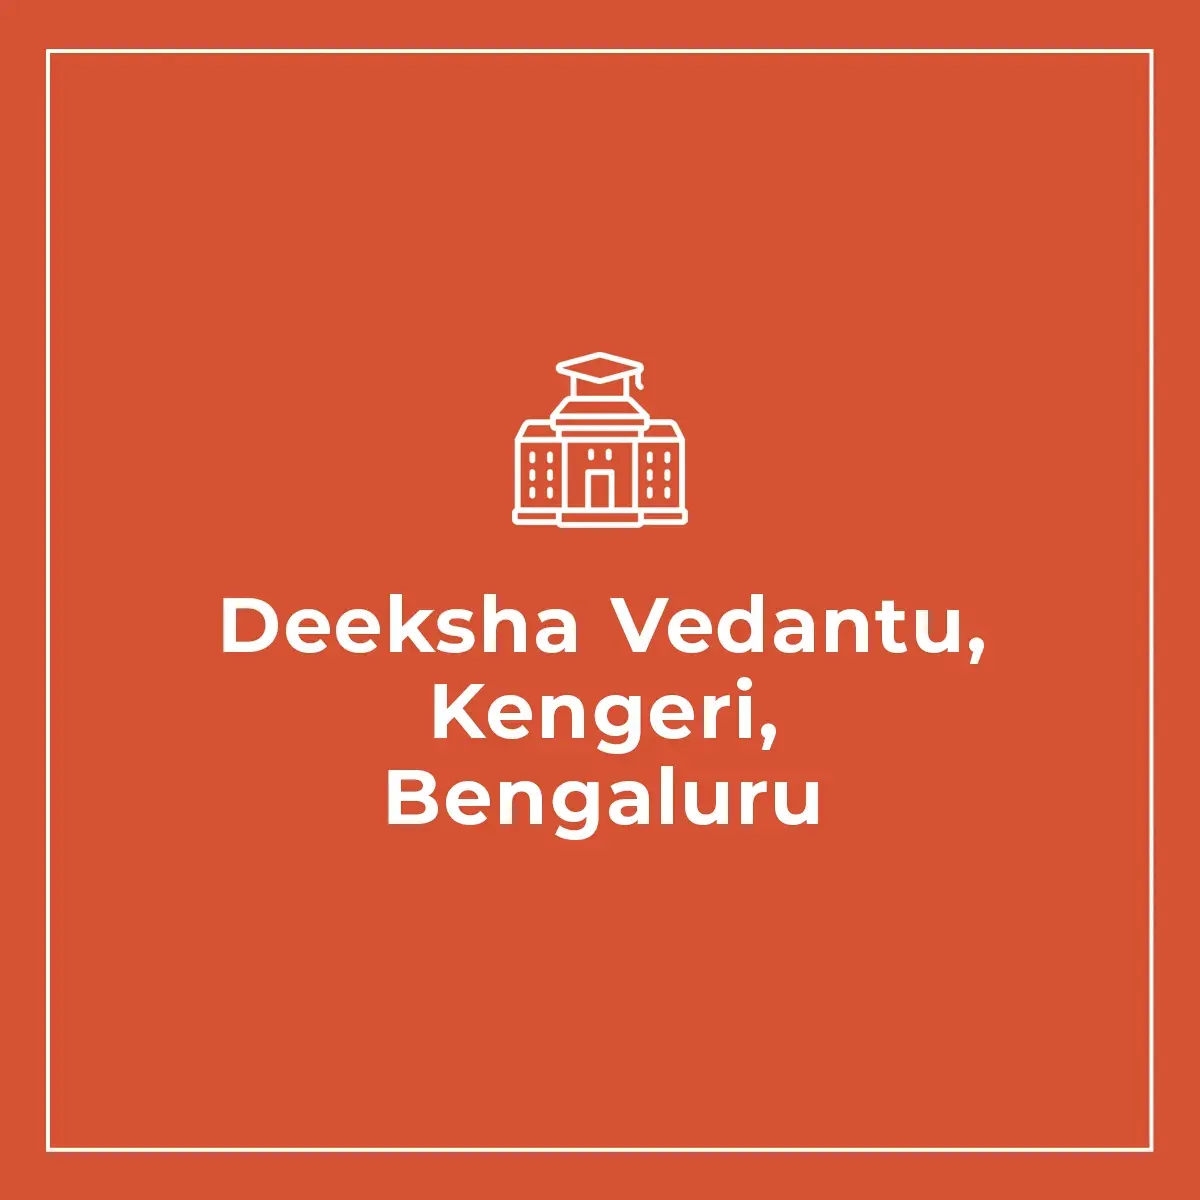 Deeksha Vedantu, Kengeri, Bengaluru